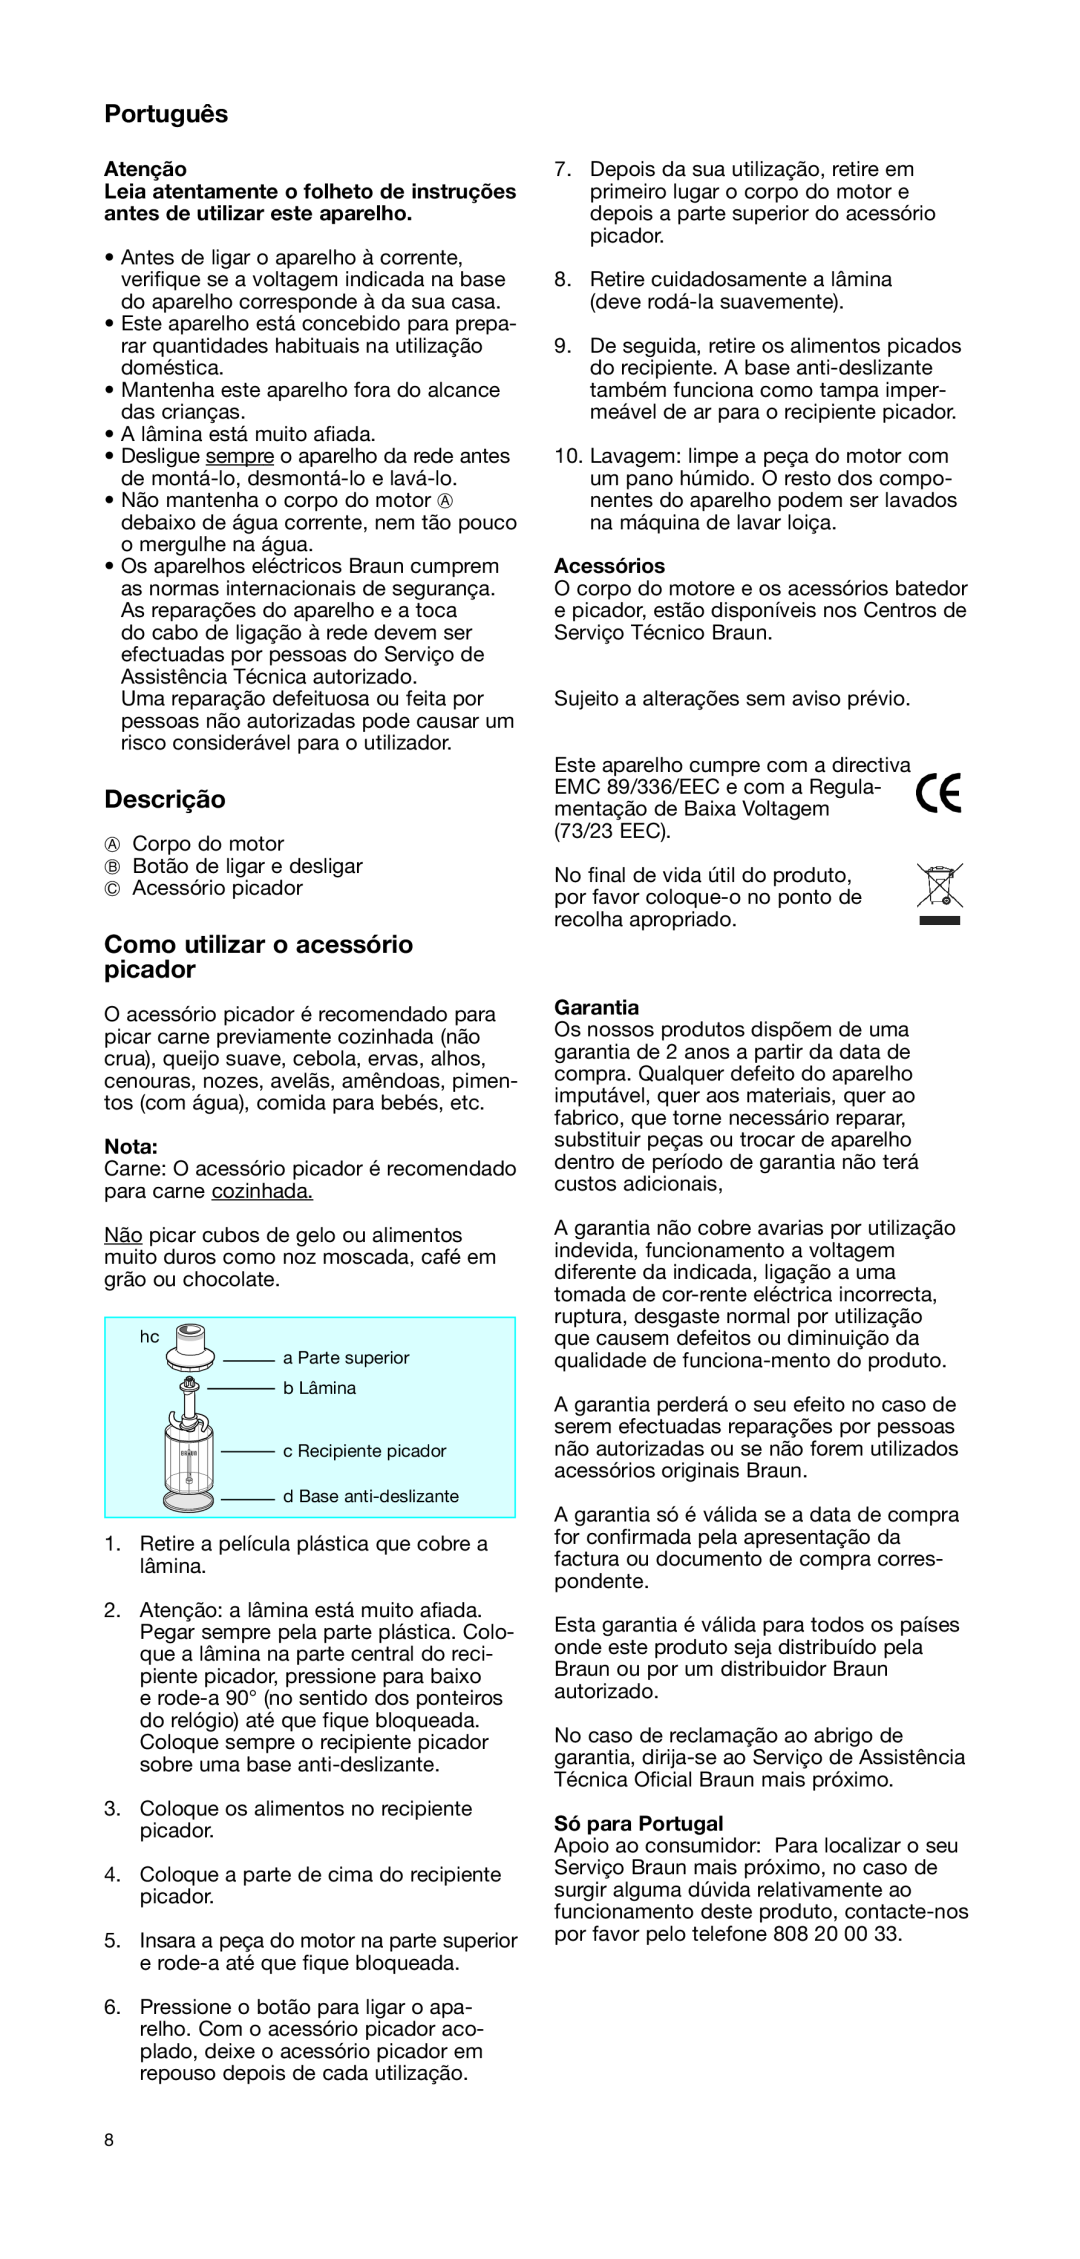 Braun CH 100 manual Português, Descrição, Como utilizar o acessório picador, Atenção, Nota, Acessórios, Garantia 